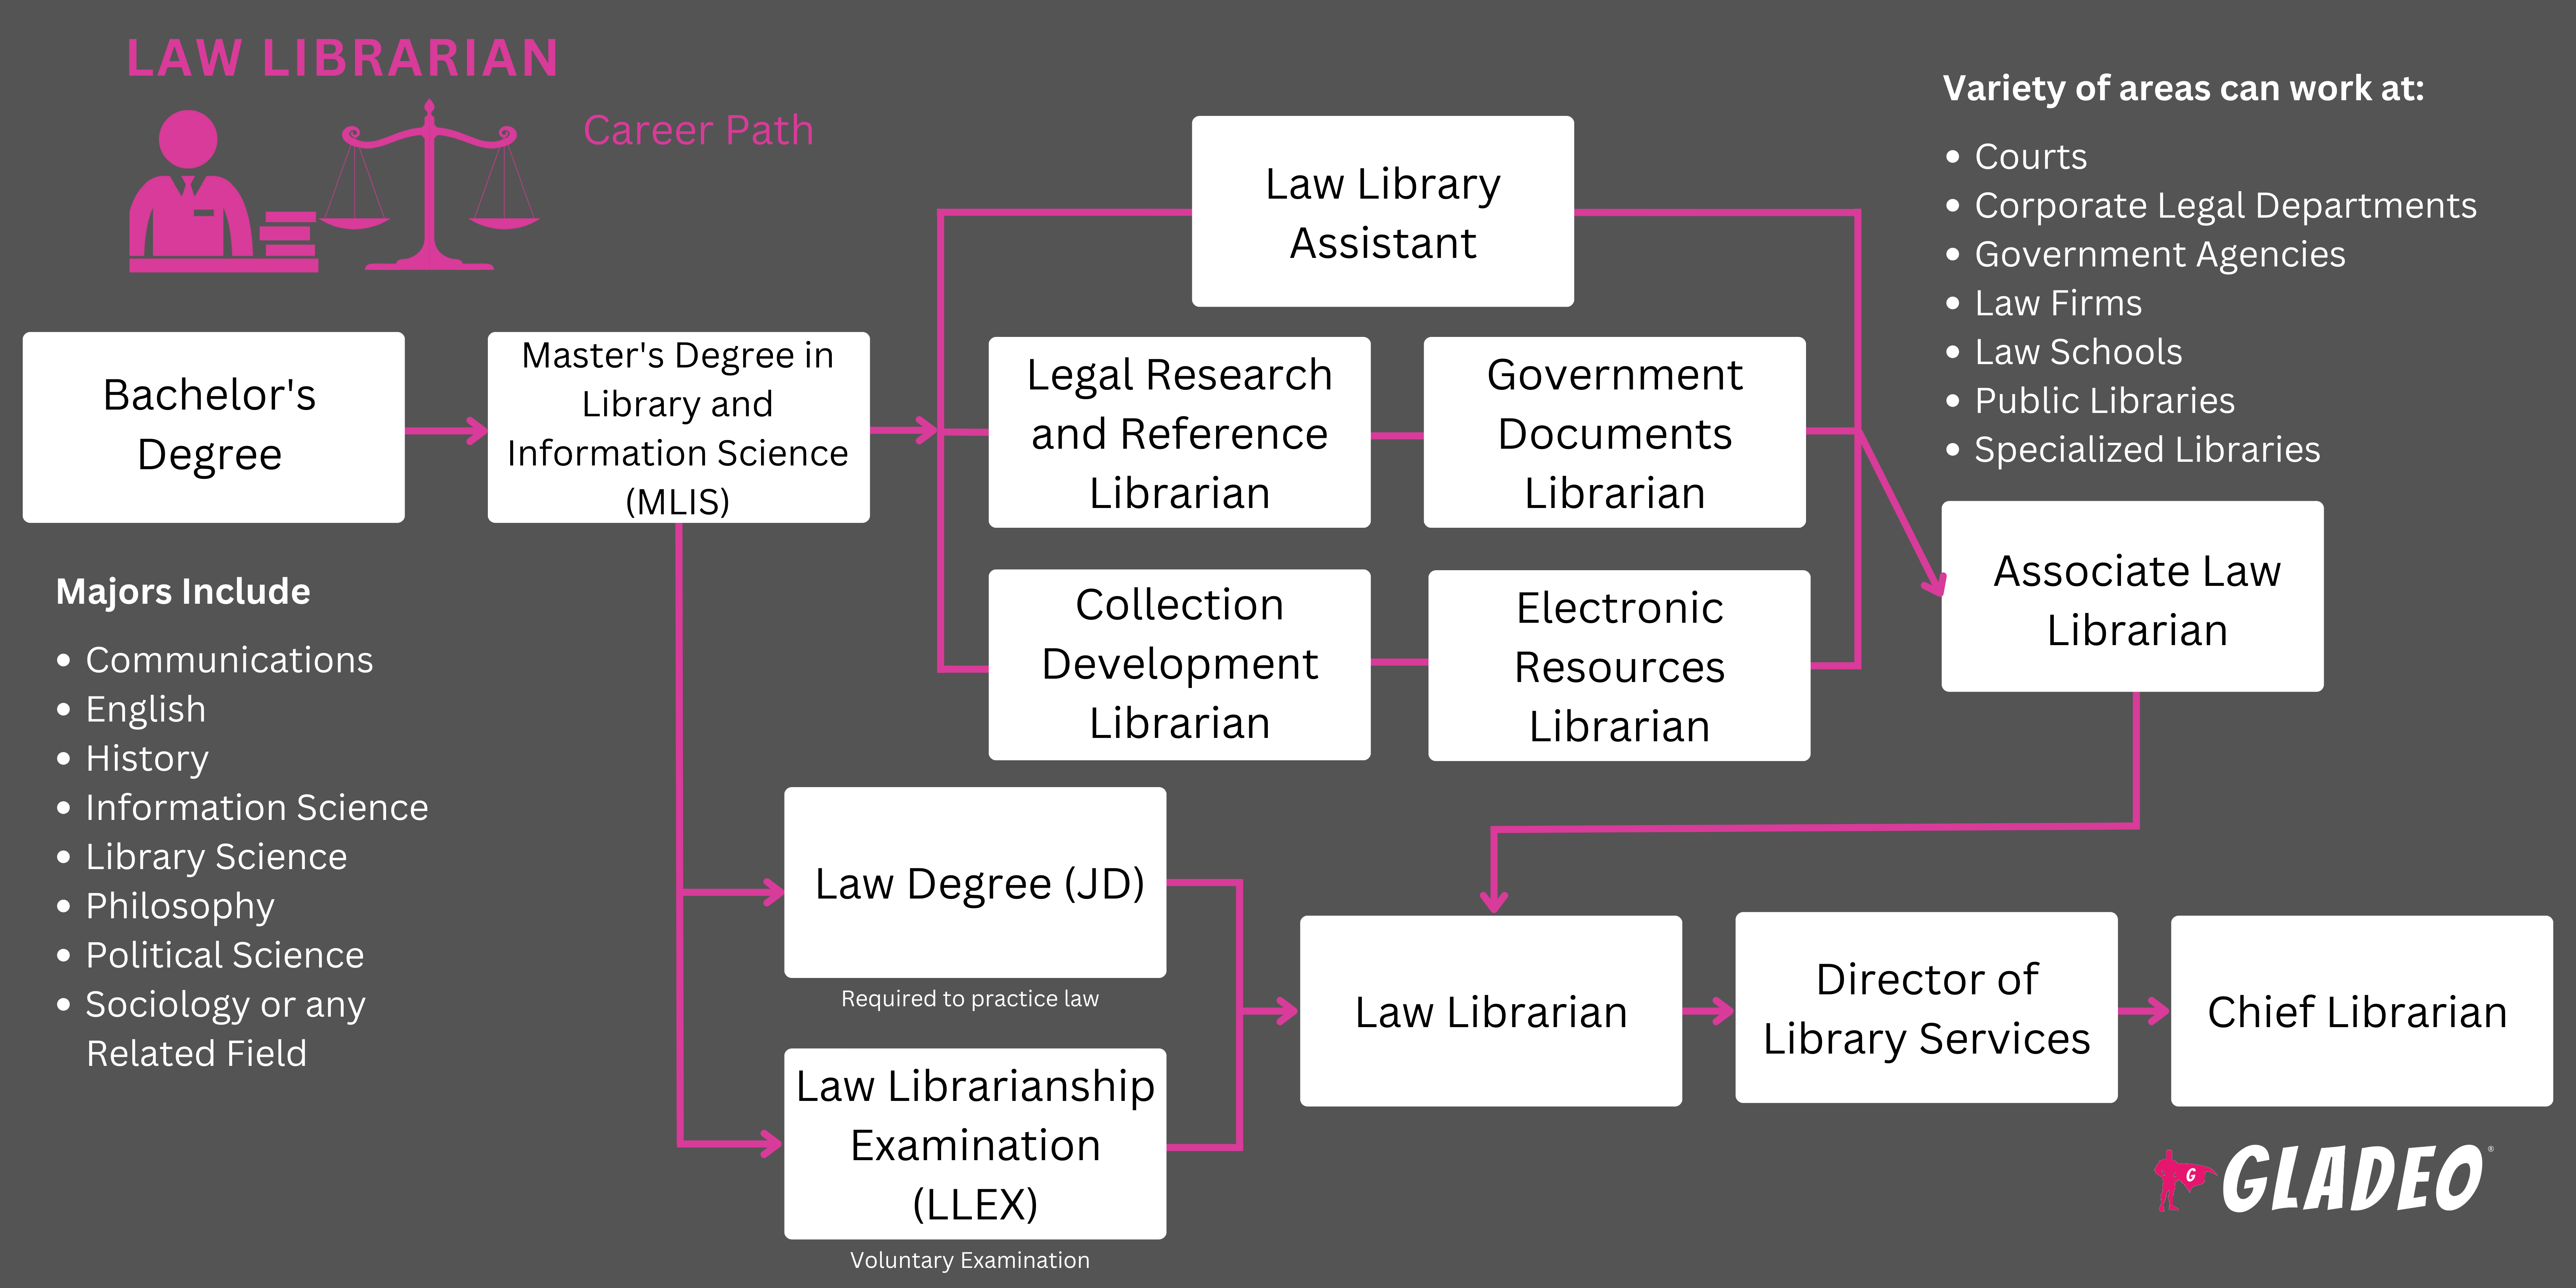 Roadmap ng Librarian ng Batas